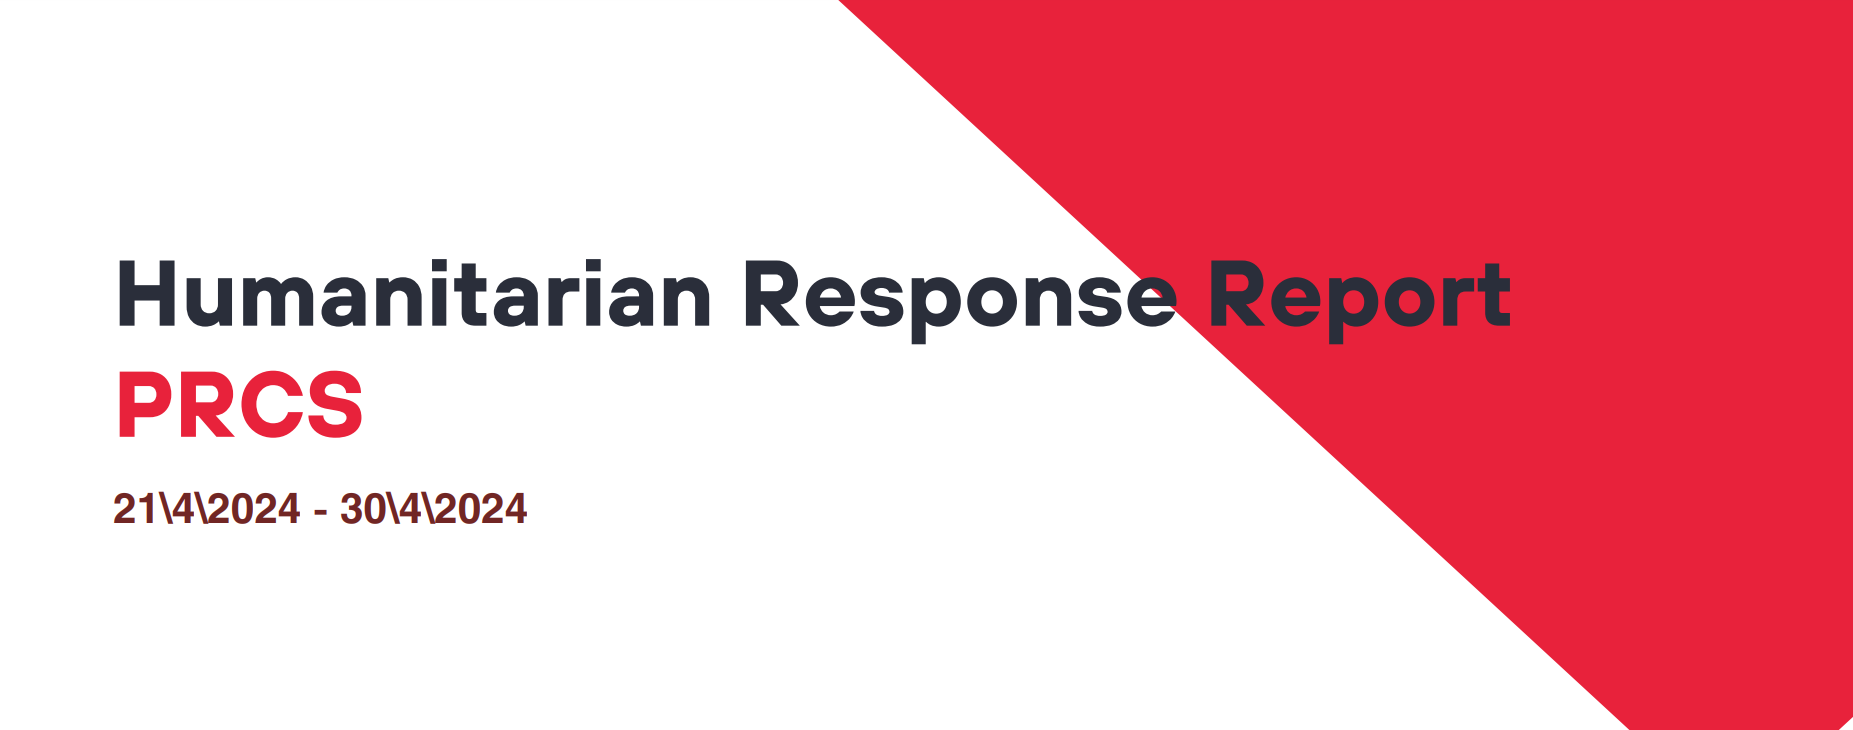 Humanitarian Response Report PRCS 21/4/2024 - 30/4/2024